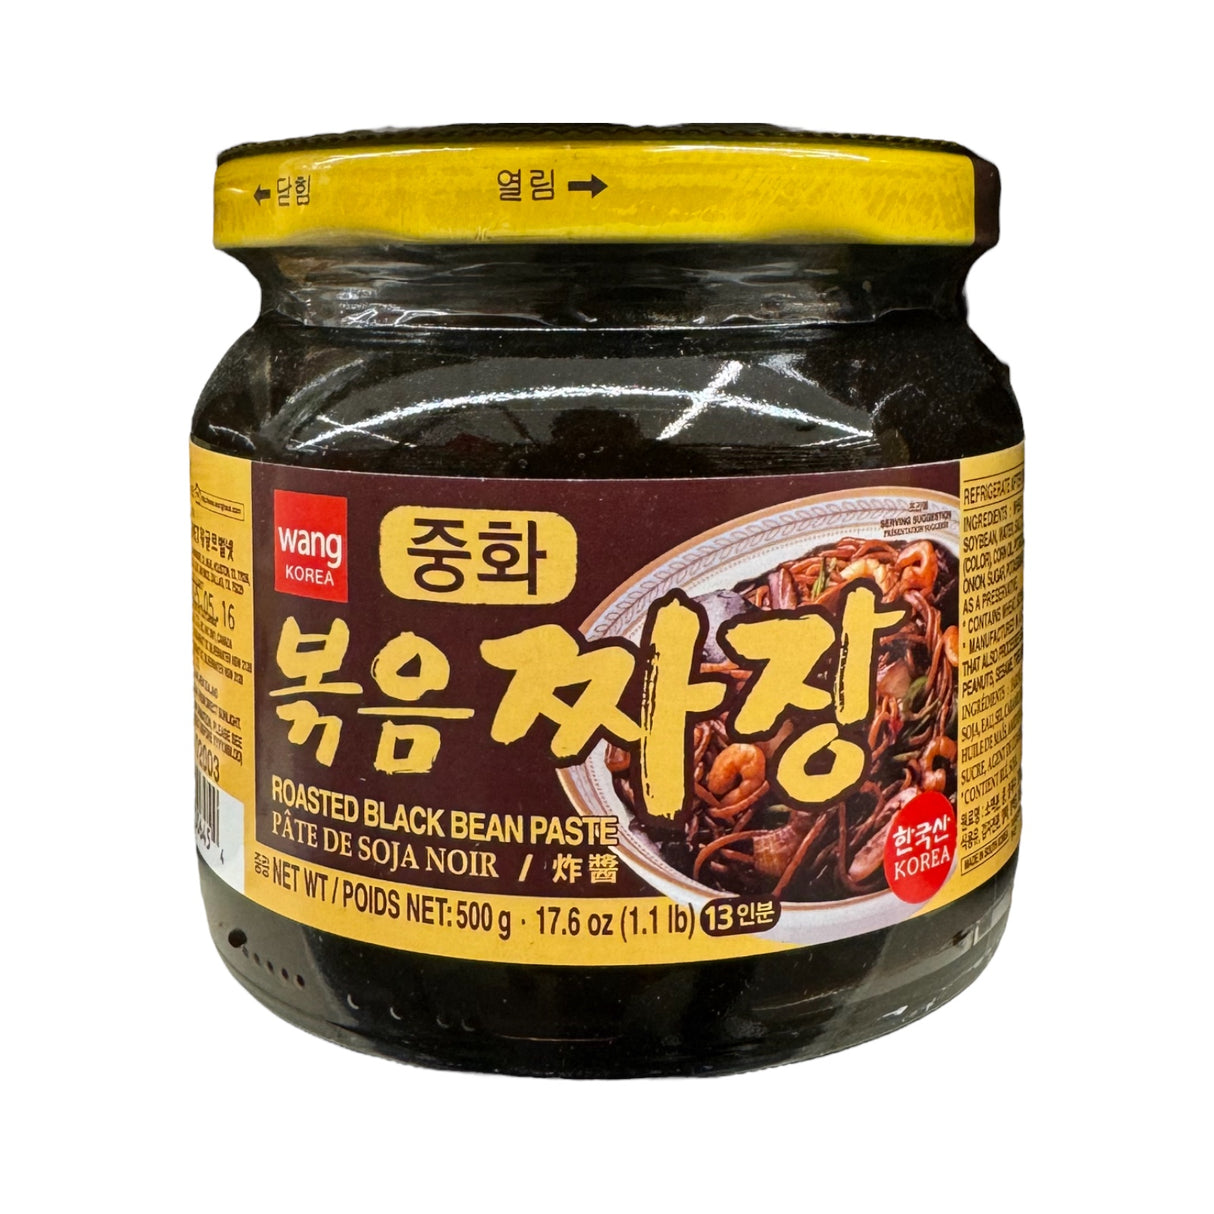 Wang Korea Roasted Black Bean Paste